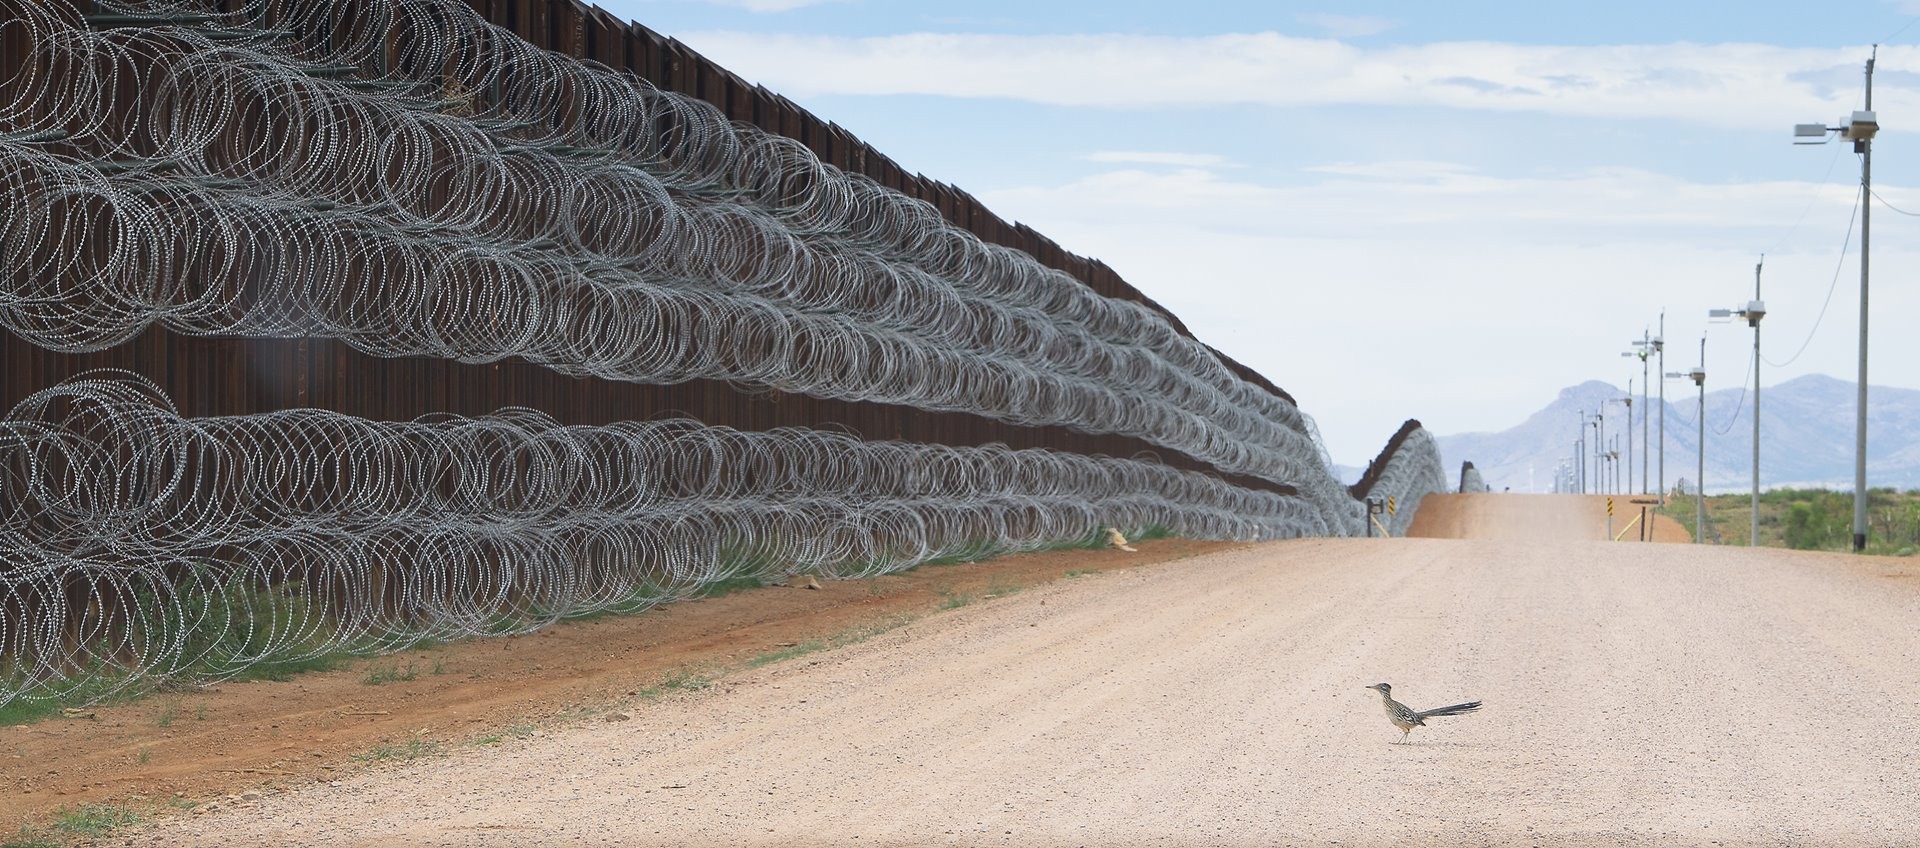 2 место в категории Природа, 2020. Калифорнийская земляная кукушка у пограничной стены, разделяющей США и Мексику в Аризоне. Автор Алехандро Прието